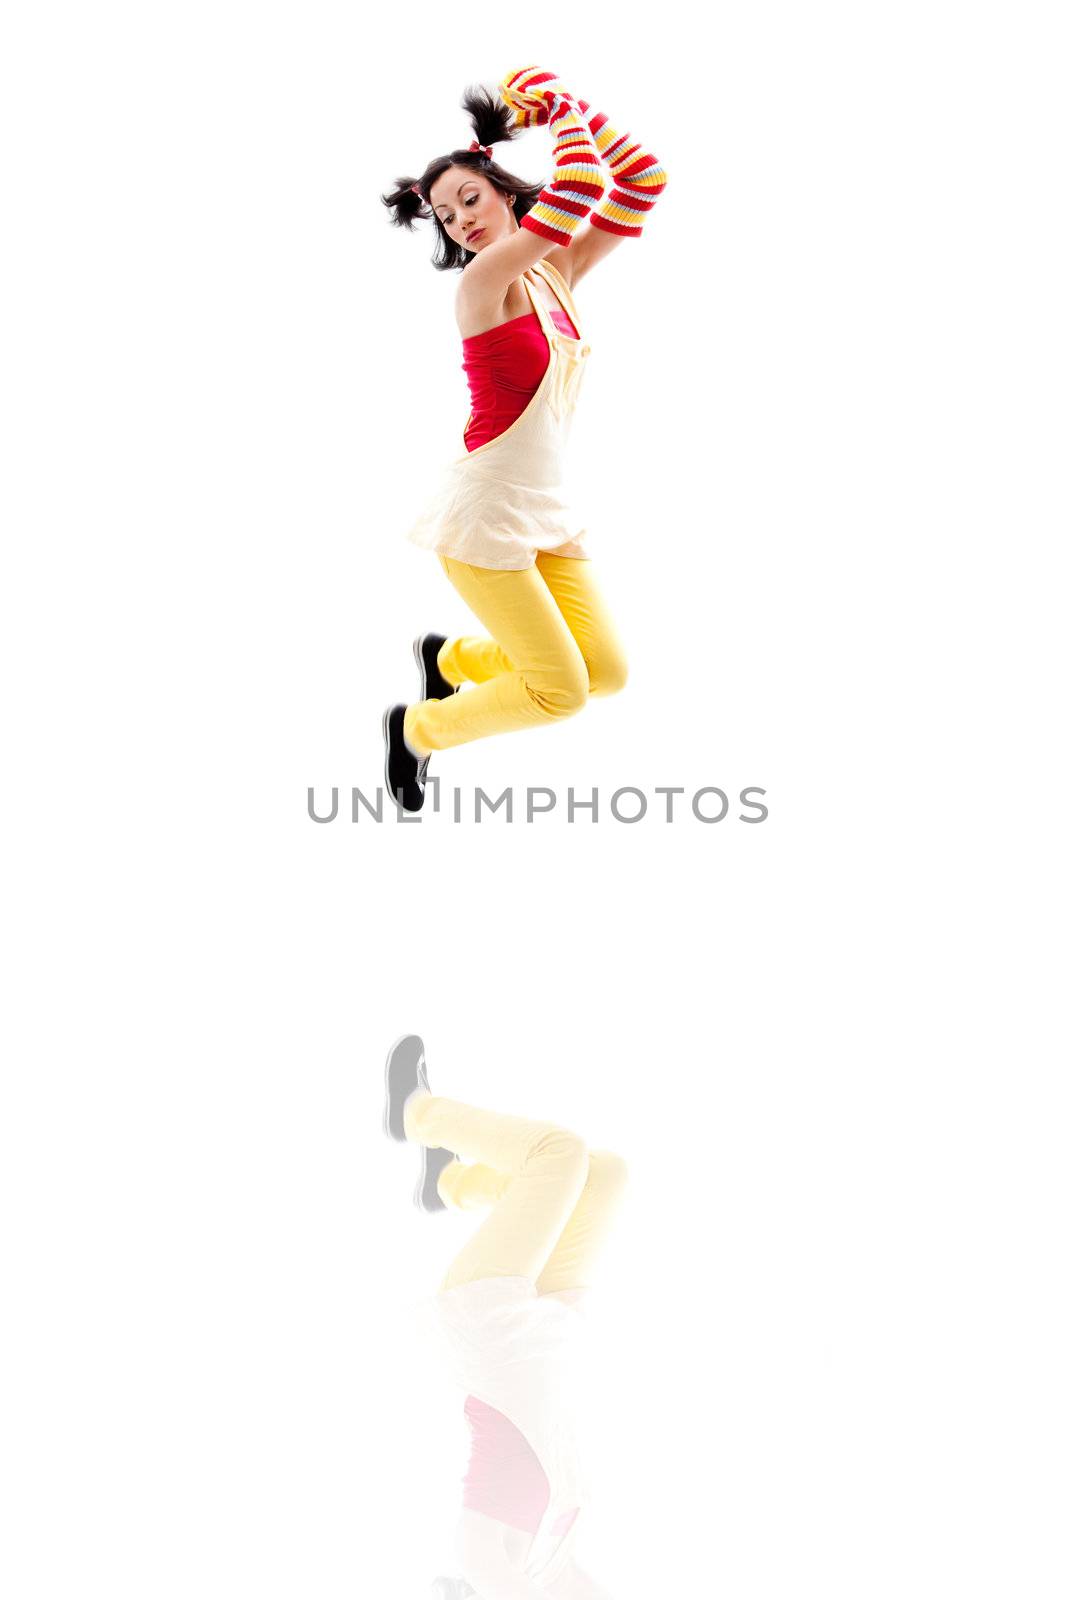 Jumping girl by phakimata